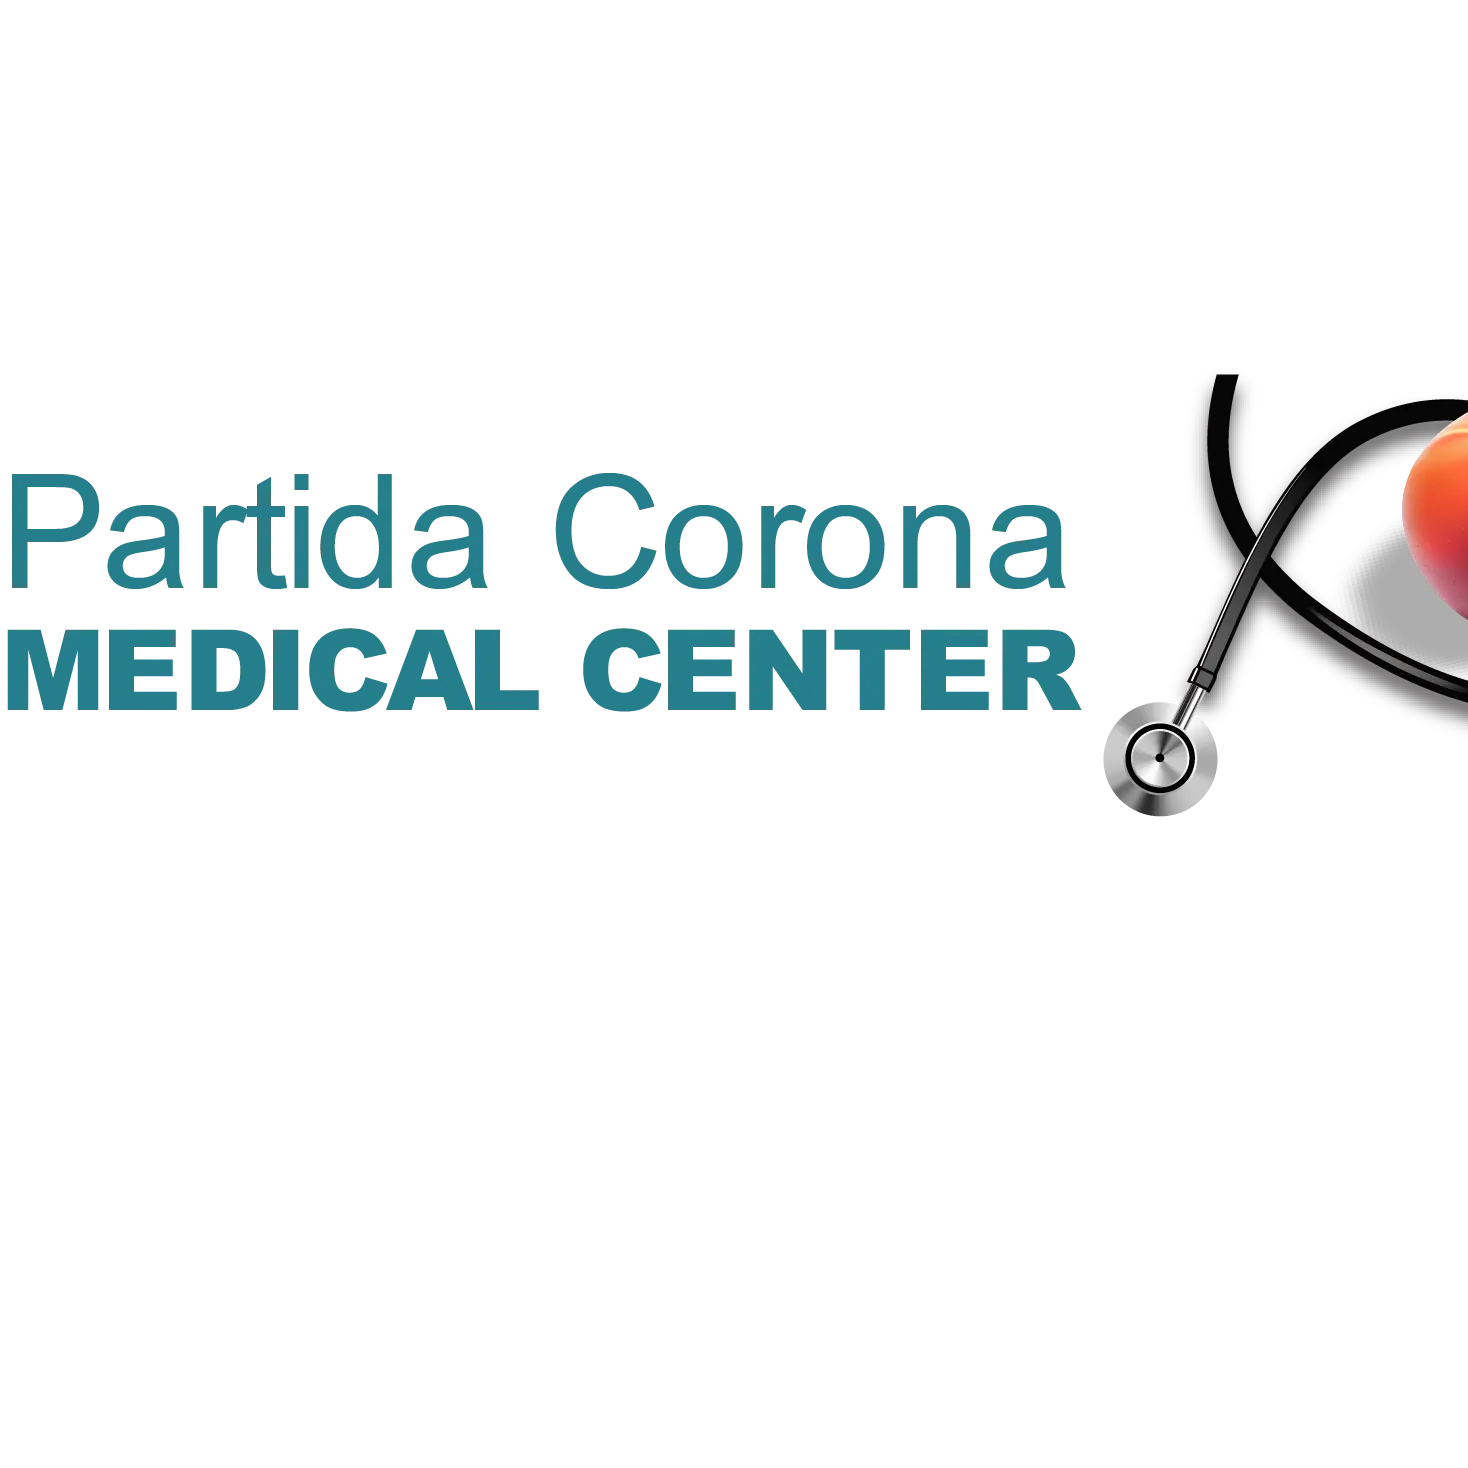 Partida Corona Medical Center - Las Vegas, NV 89121 - (702)565-6004 | ShowMeLocal.com